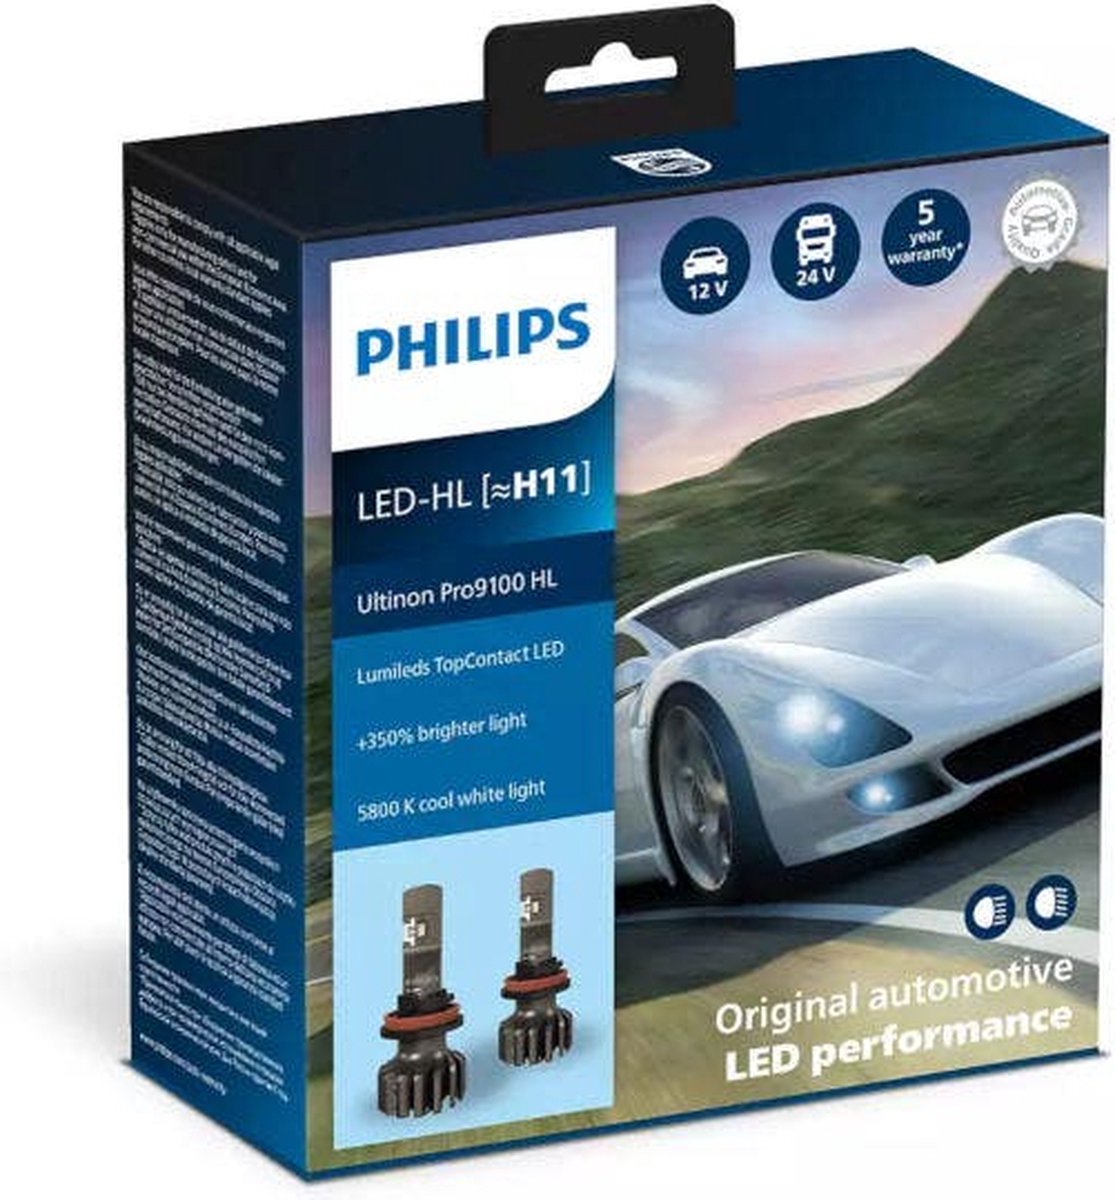 Philips Ultinon Pro9100 LED-HL H11 set LUM11362U91X2